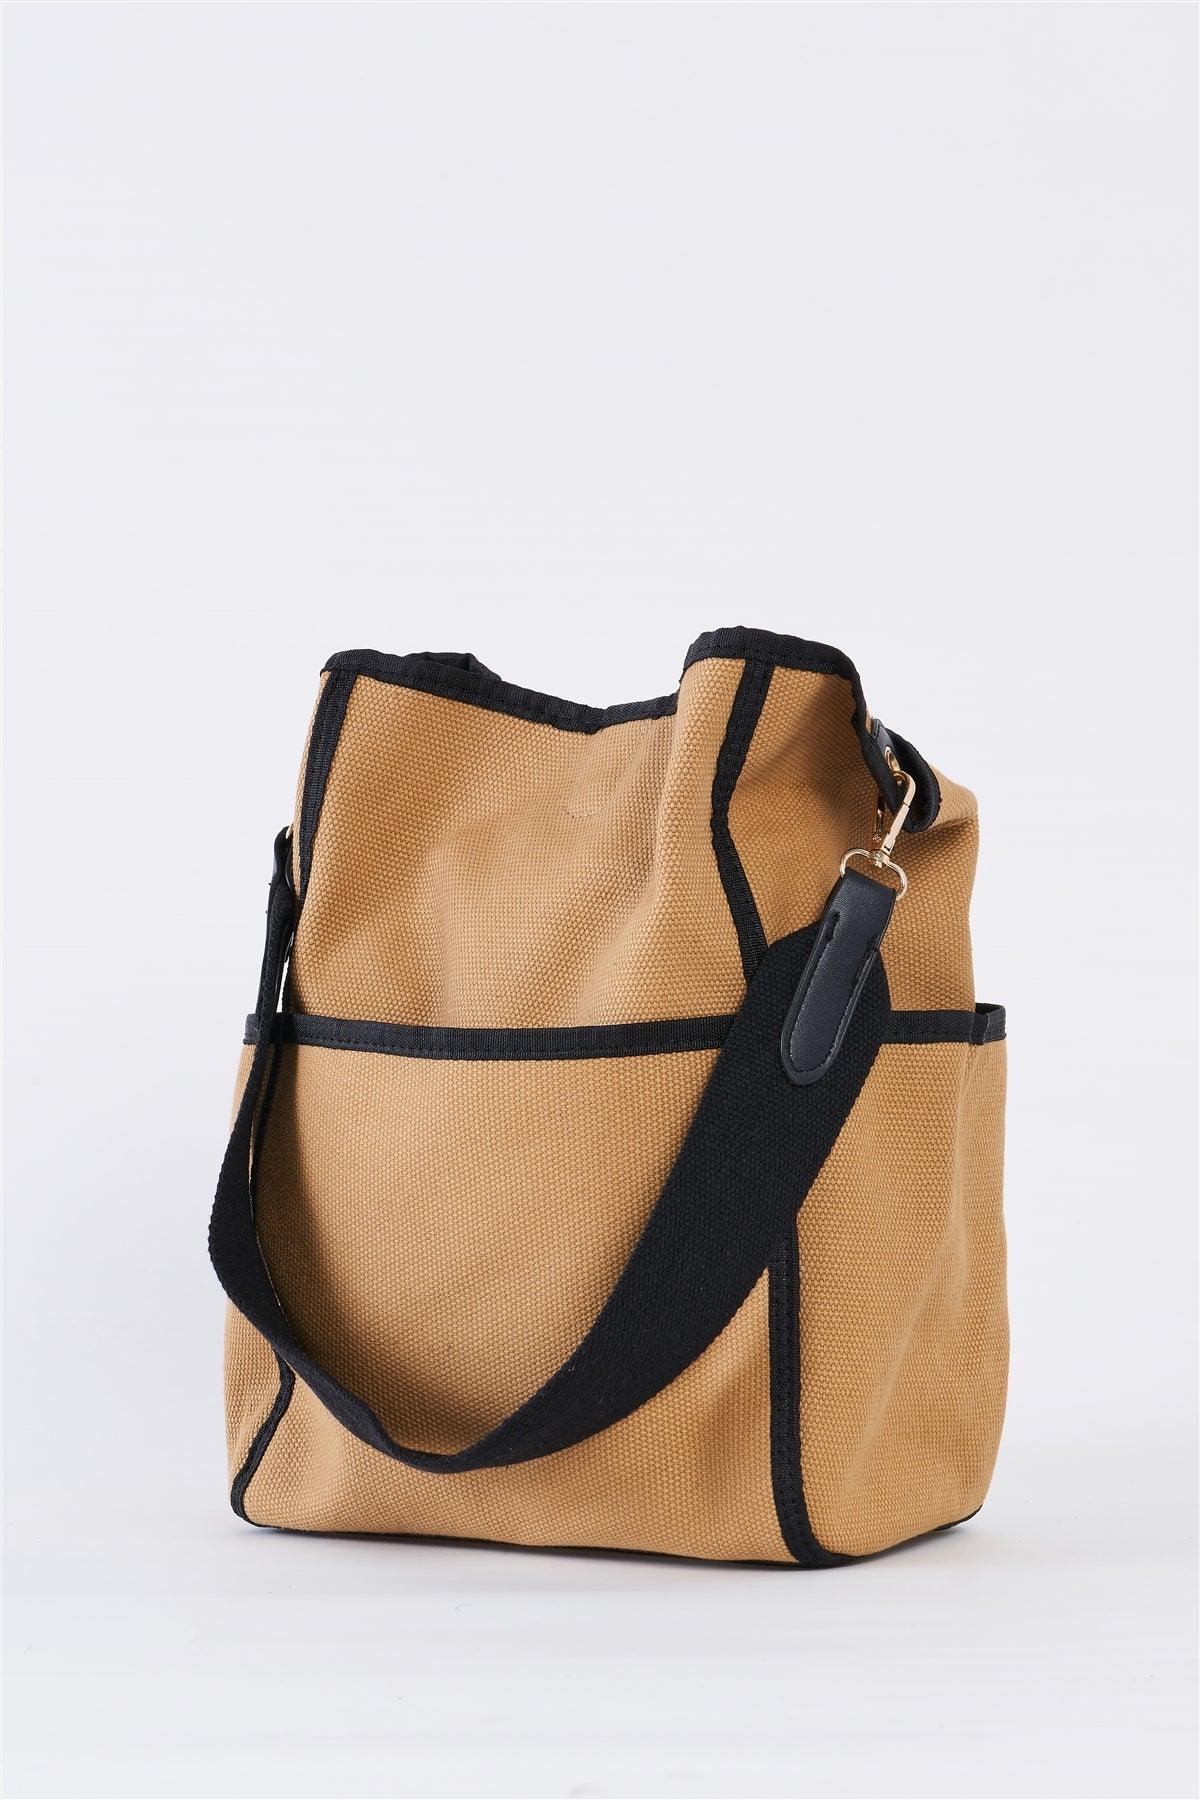 Khaki Canvas Hardware Belt Detail Shoulder Strap Tote Bag /1 Bag